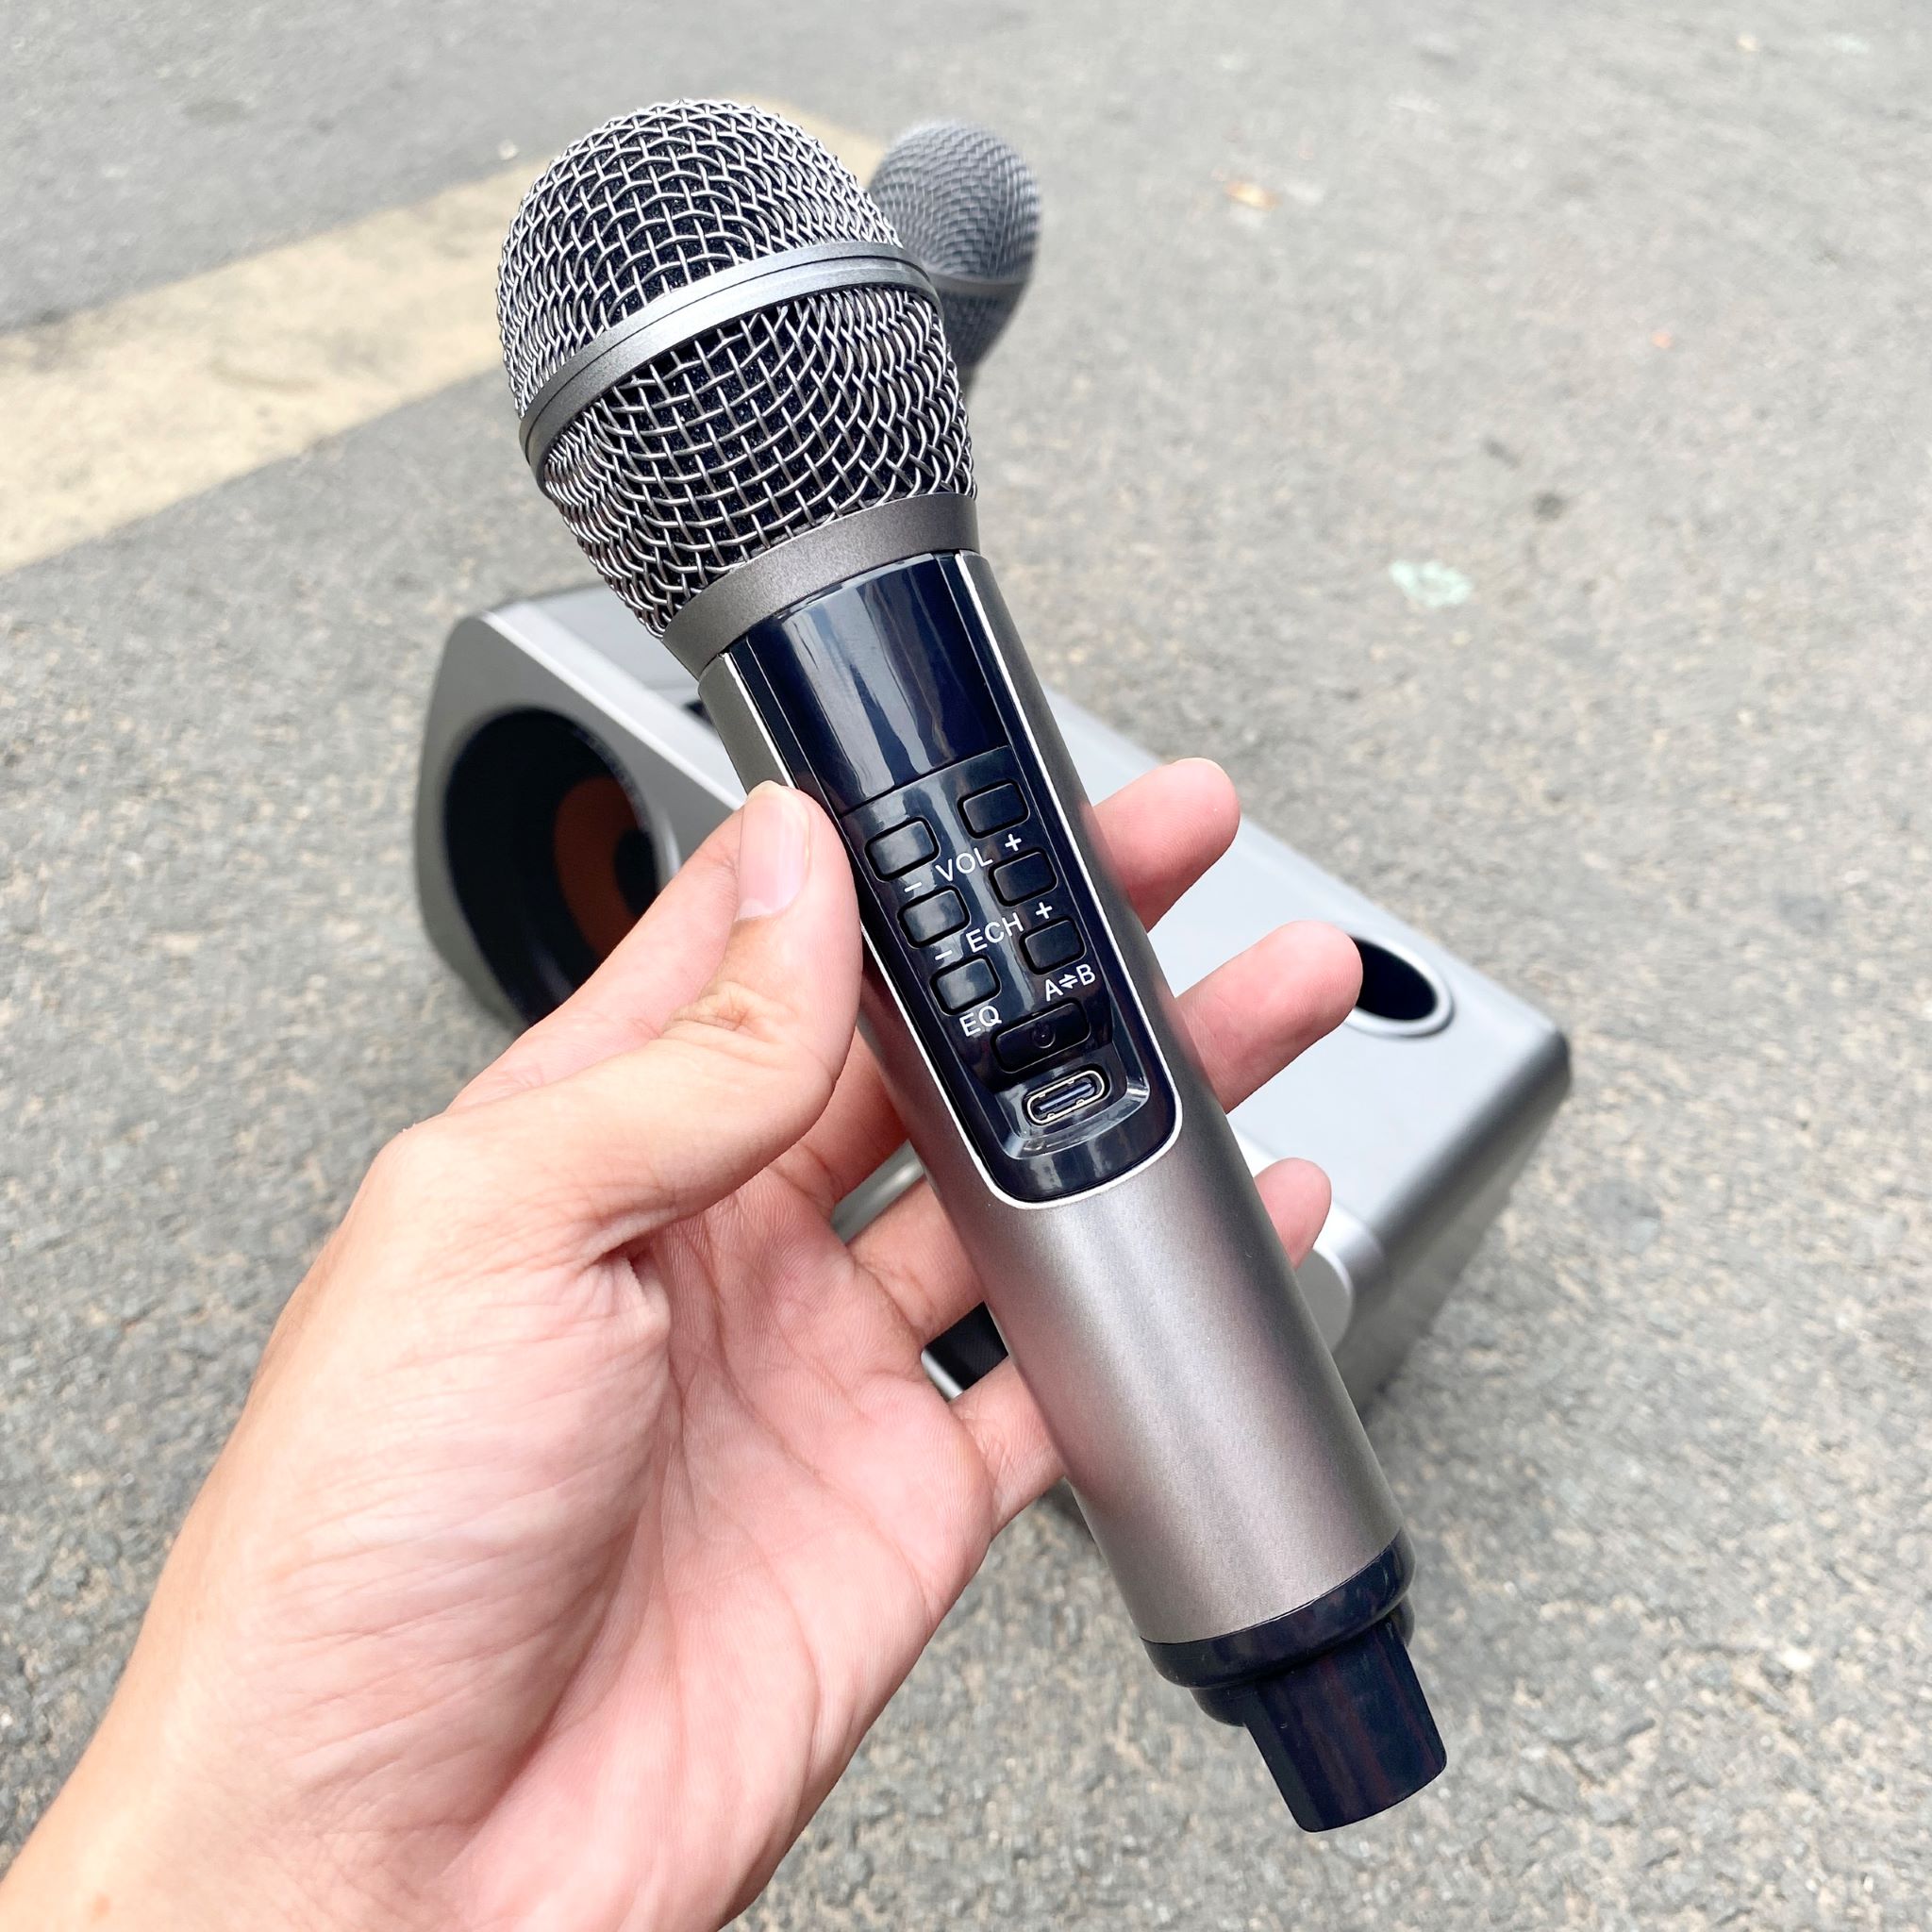 Loa karaoke bluetooth SDRD SD-312 - Loa mắt cú mới nhất - Tặng kèm 2 micro không dây có màn hình LCD - Sạc pin cho micro ngay trên loa - Chỉnh EQ, Echo, Vol ngay trên micro - Loa xách tay du lịch cực chất - Hàng nhập khẩu